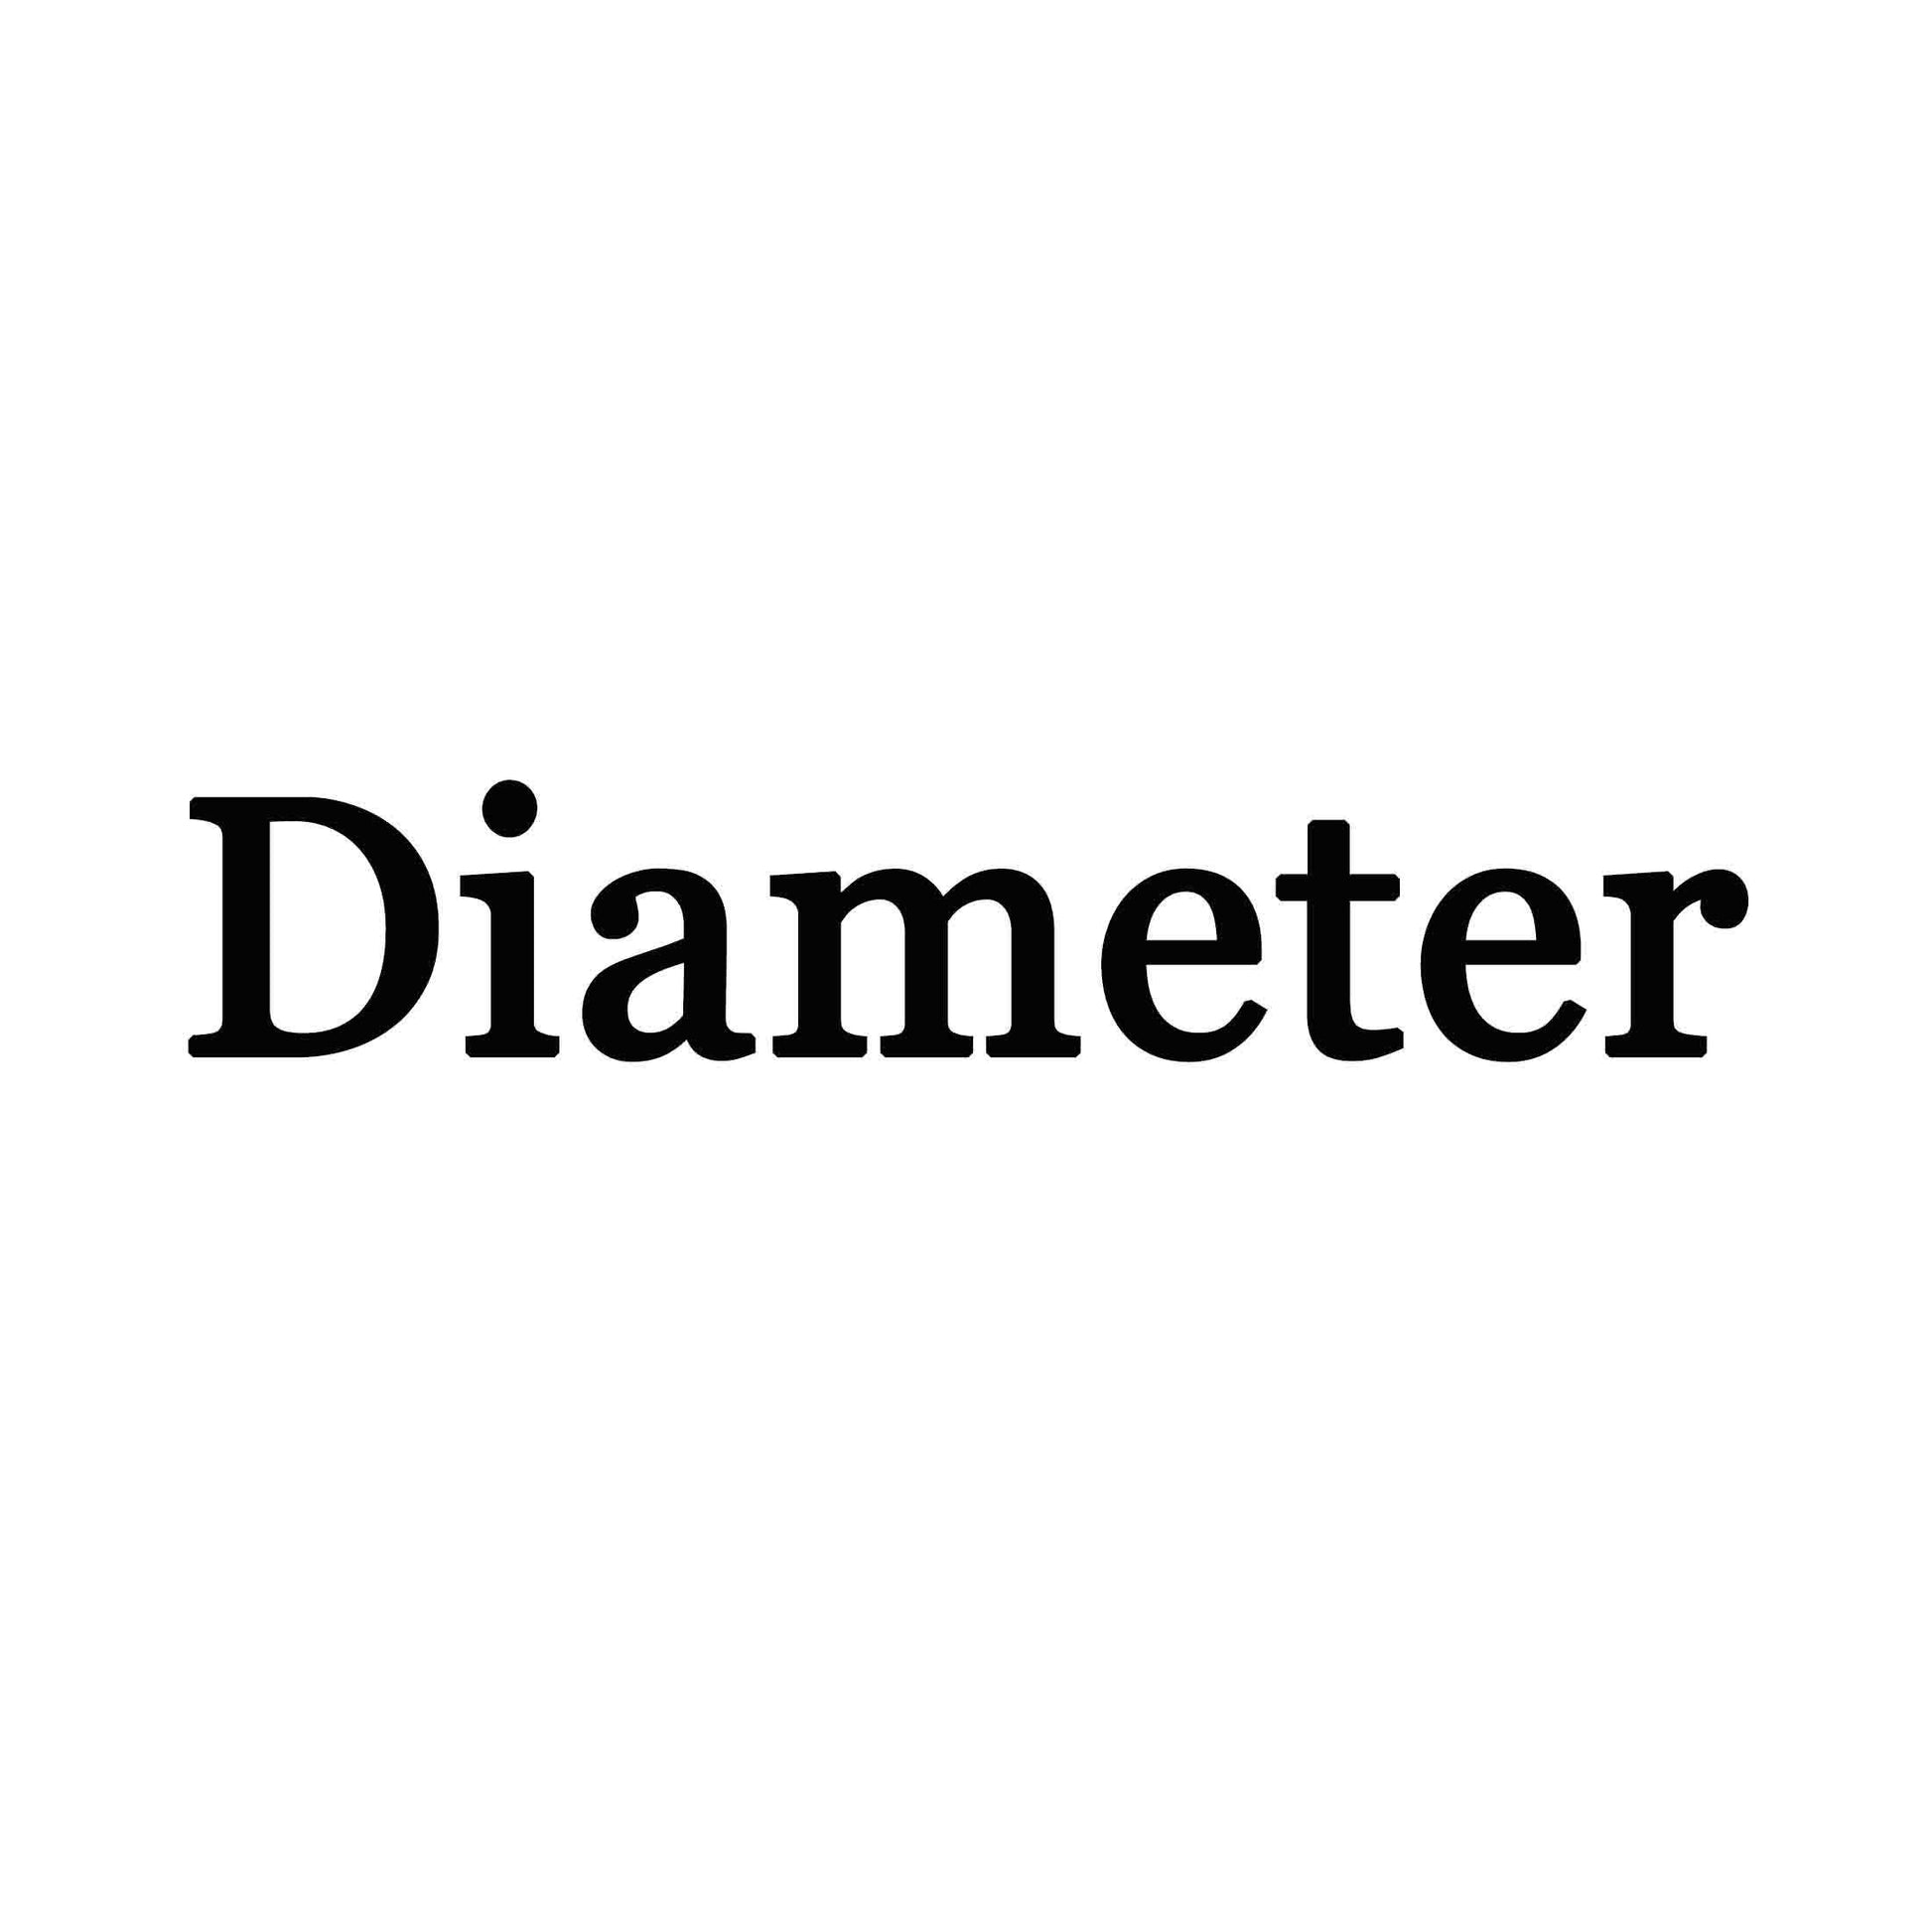 Name Sign Diameter 18" - FromPicToArt